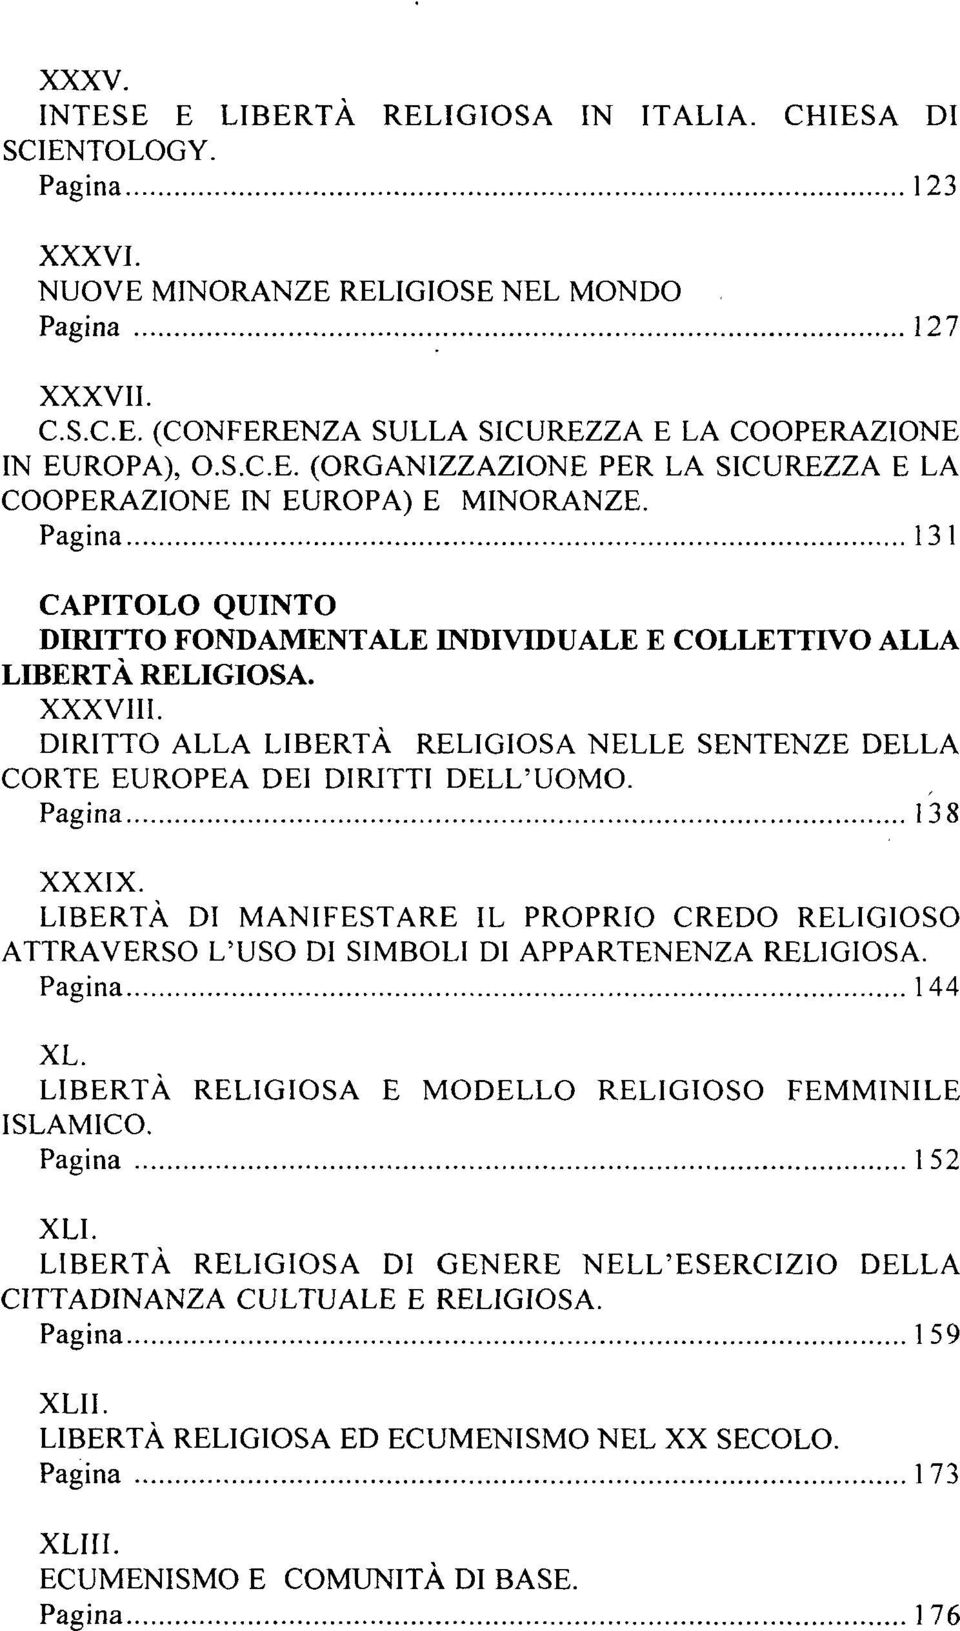 DIRITTO ALLA LIBERTÀ RELIGIOSA NELLE SENTENZE DELLA CORTE EUROPEA DEI DIRITTI. Pagina 138 XXXIX.